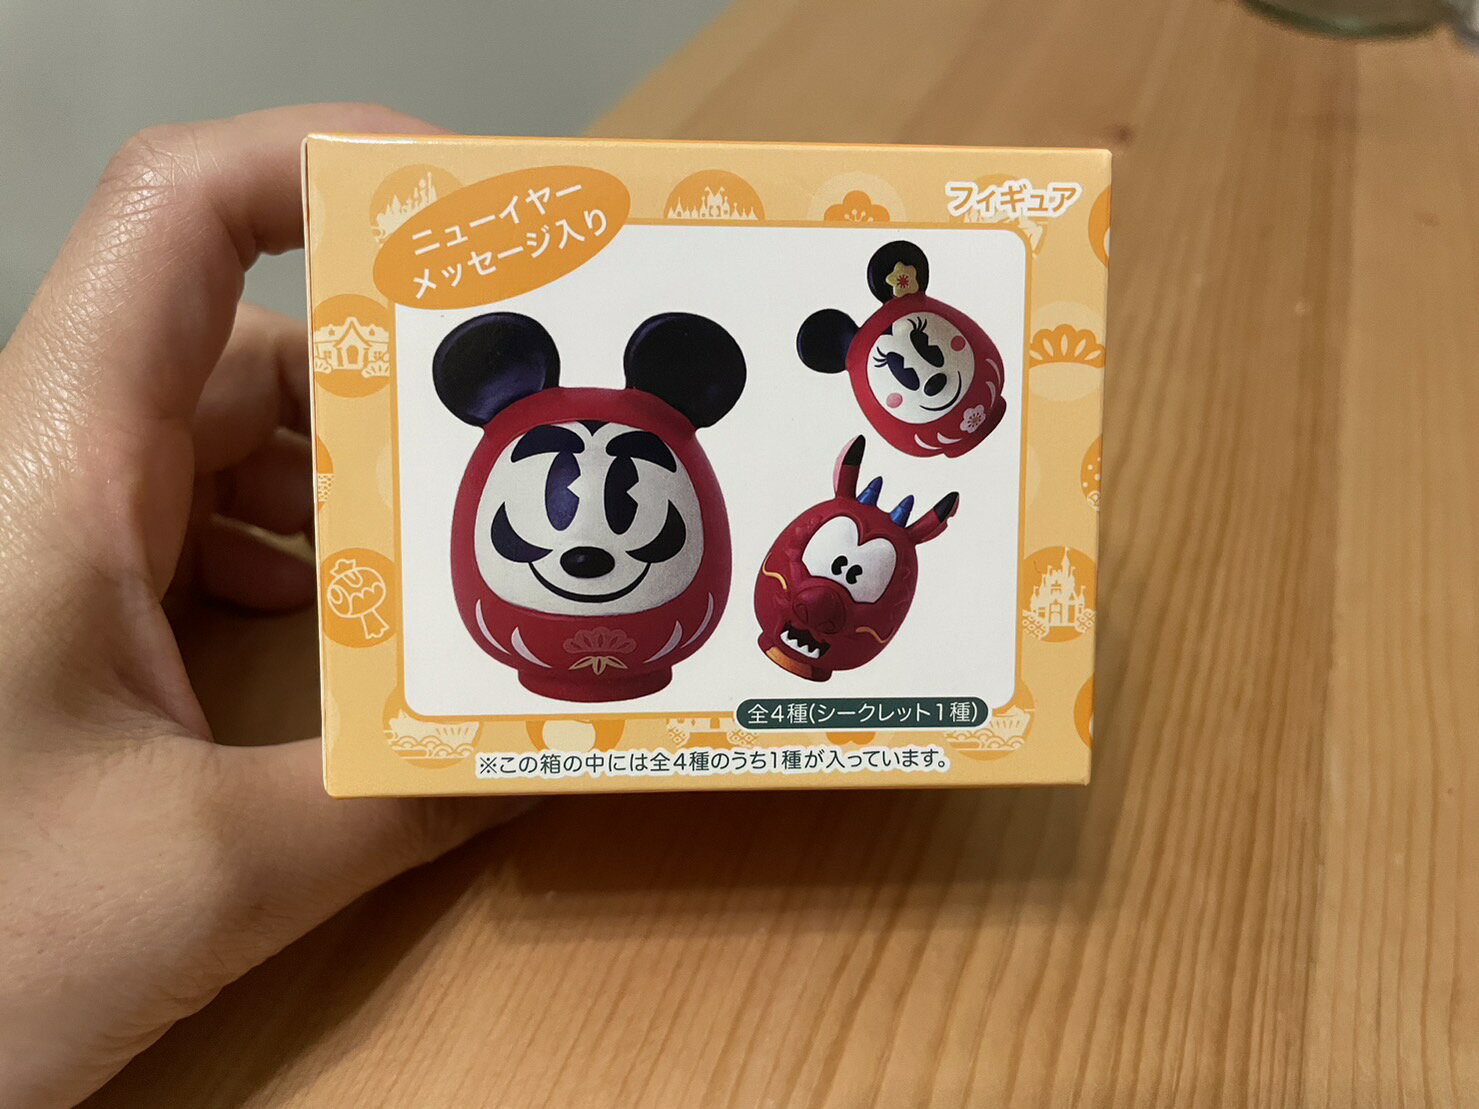 【現貨】東京迪士尼 tokyo disney 新年限定 福達摩米奇 福達摩米妮 木須龍 盲盒 指套娃娃 模型